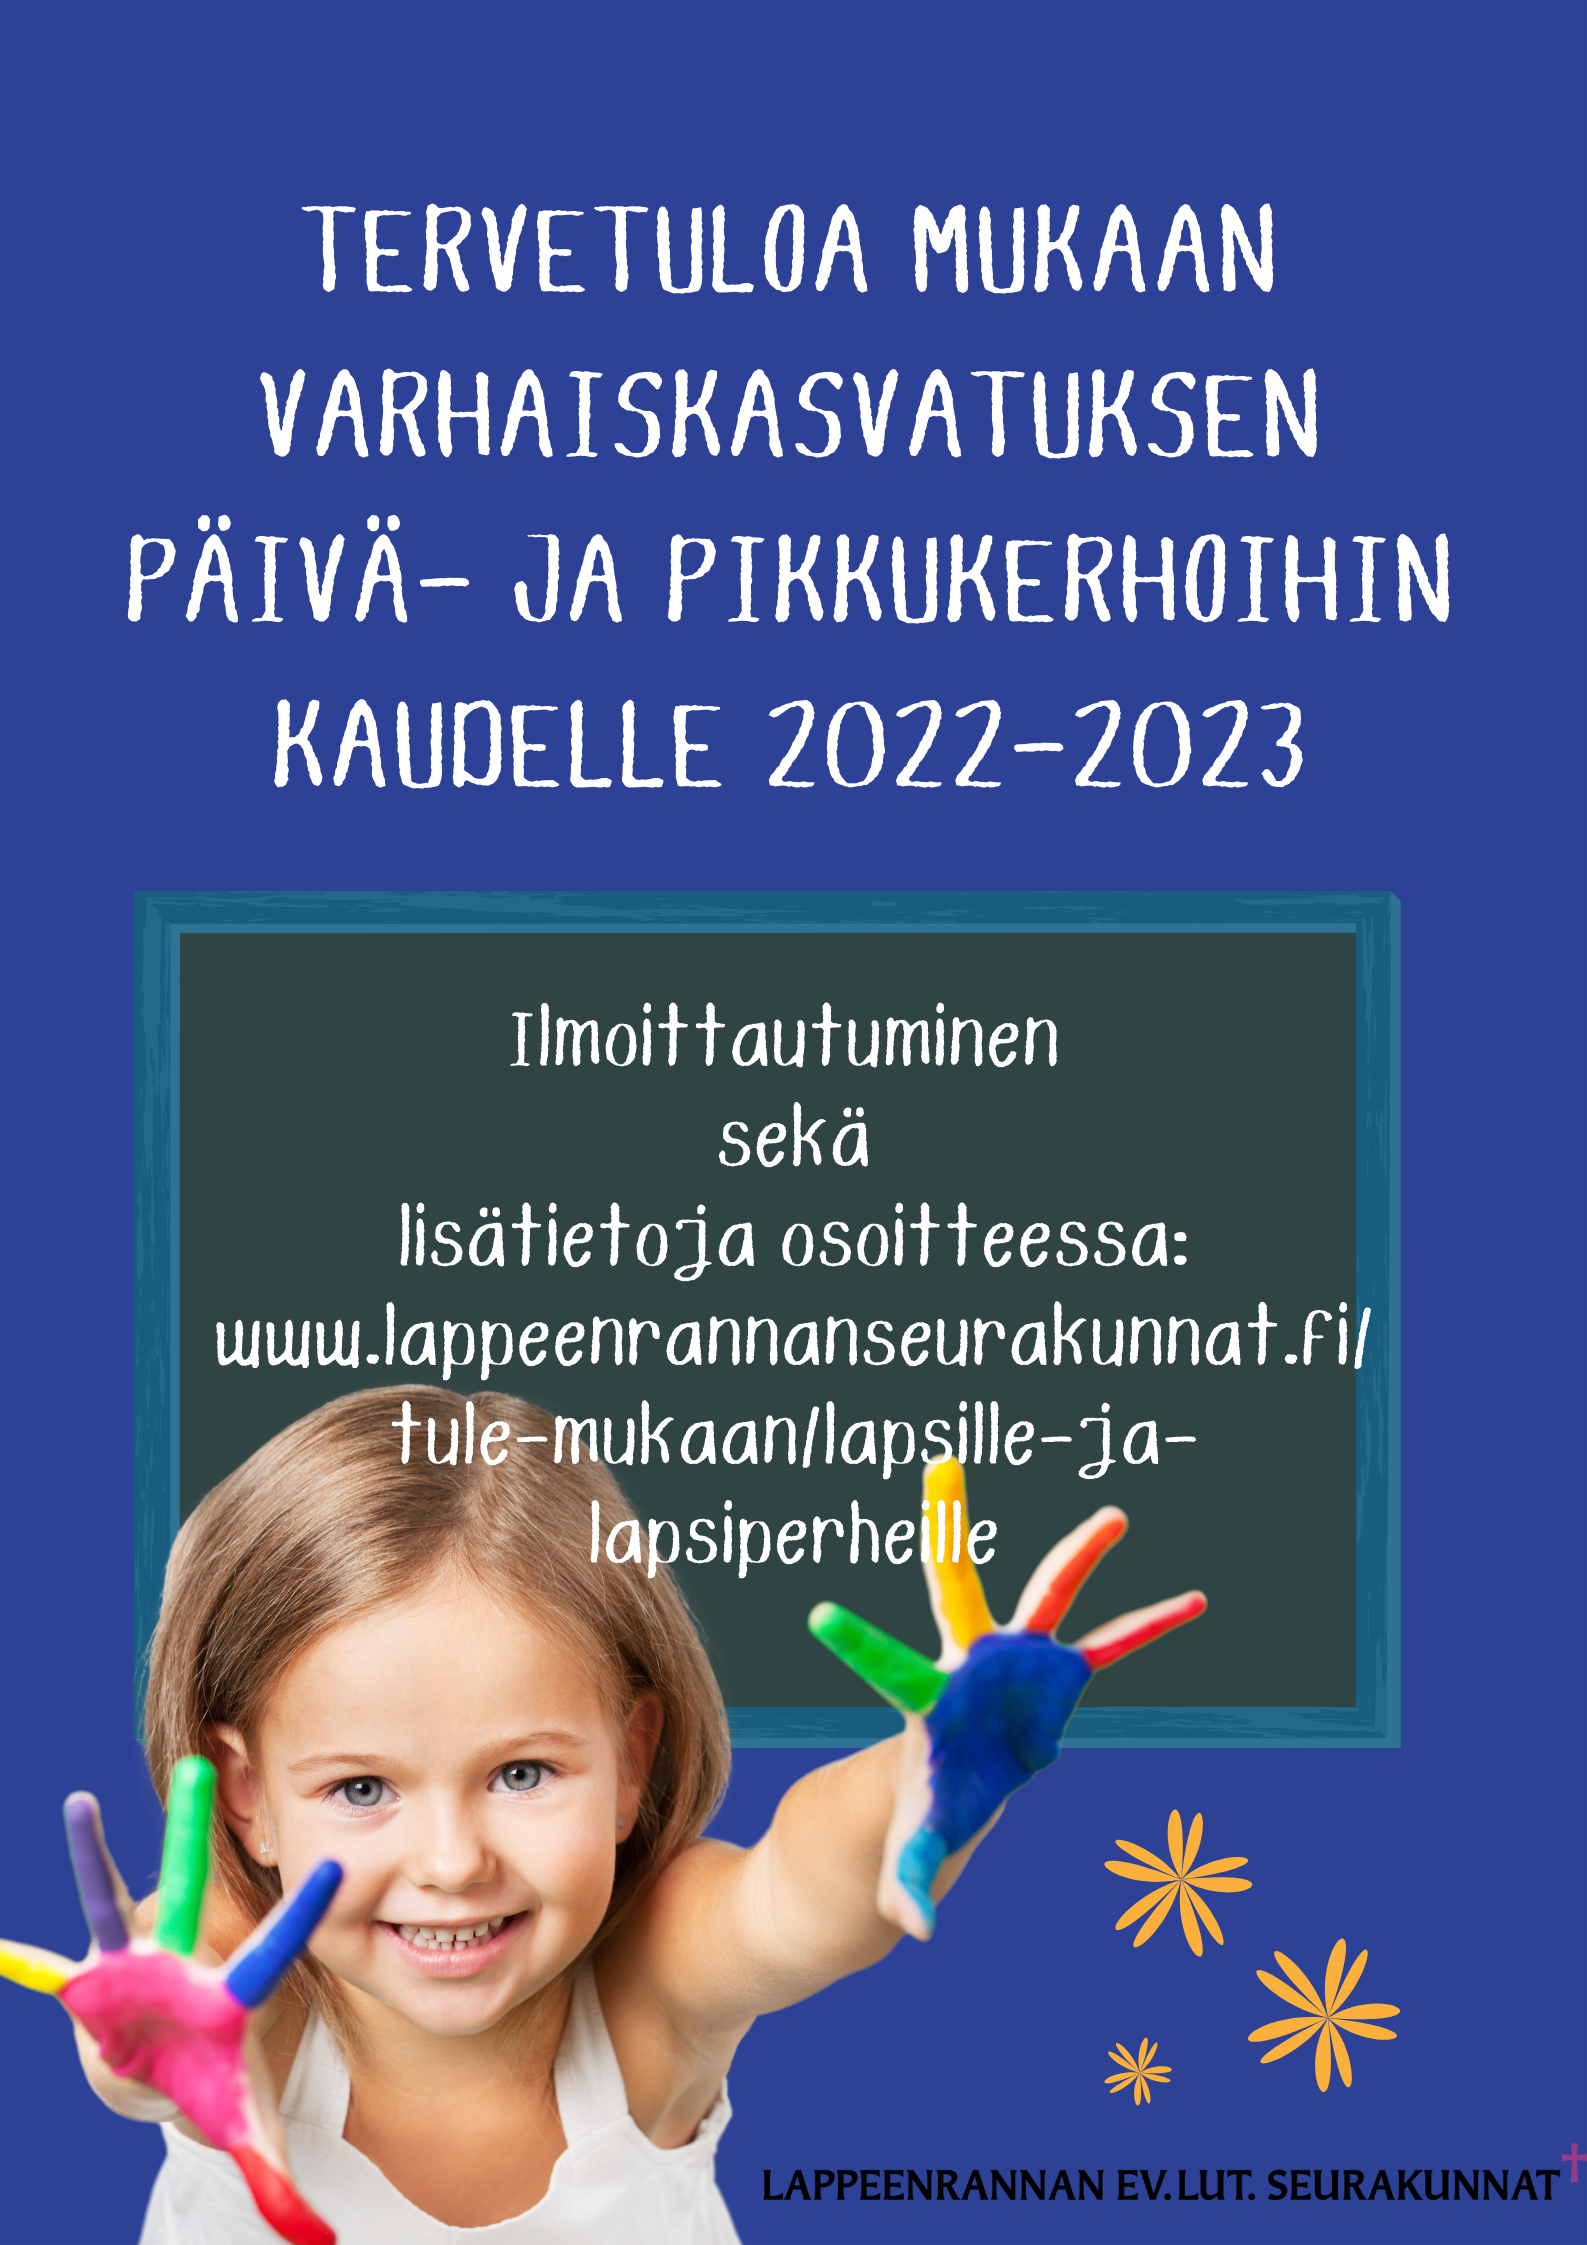 ILMOITTAUTUMINEN PÄIVÄKERHOON AVAUTUU 1.2.2022 KLO 00.01.